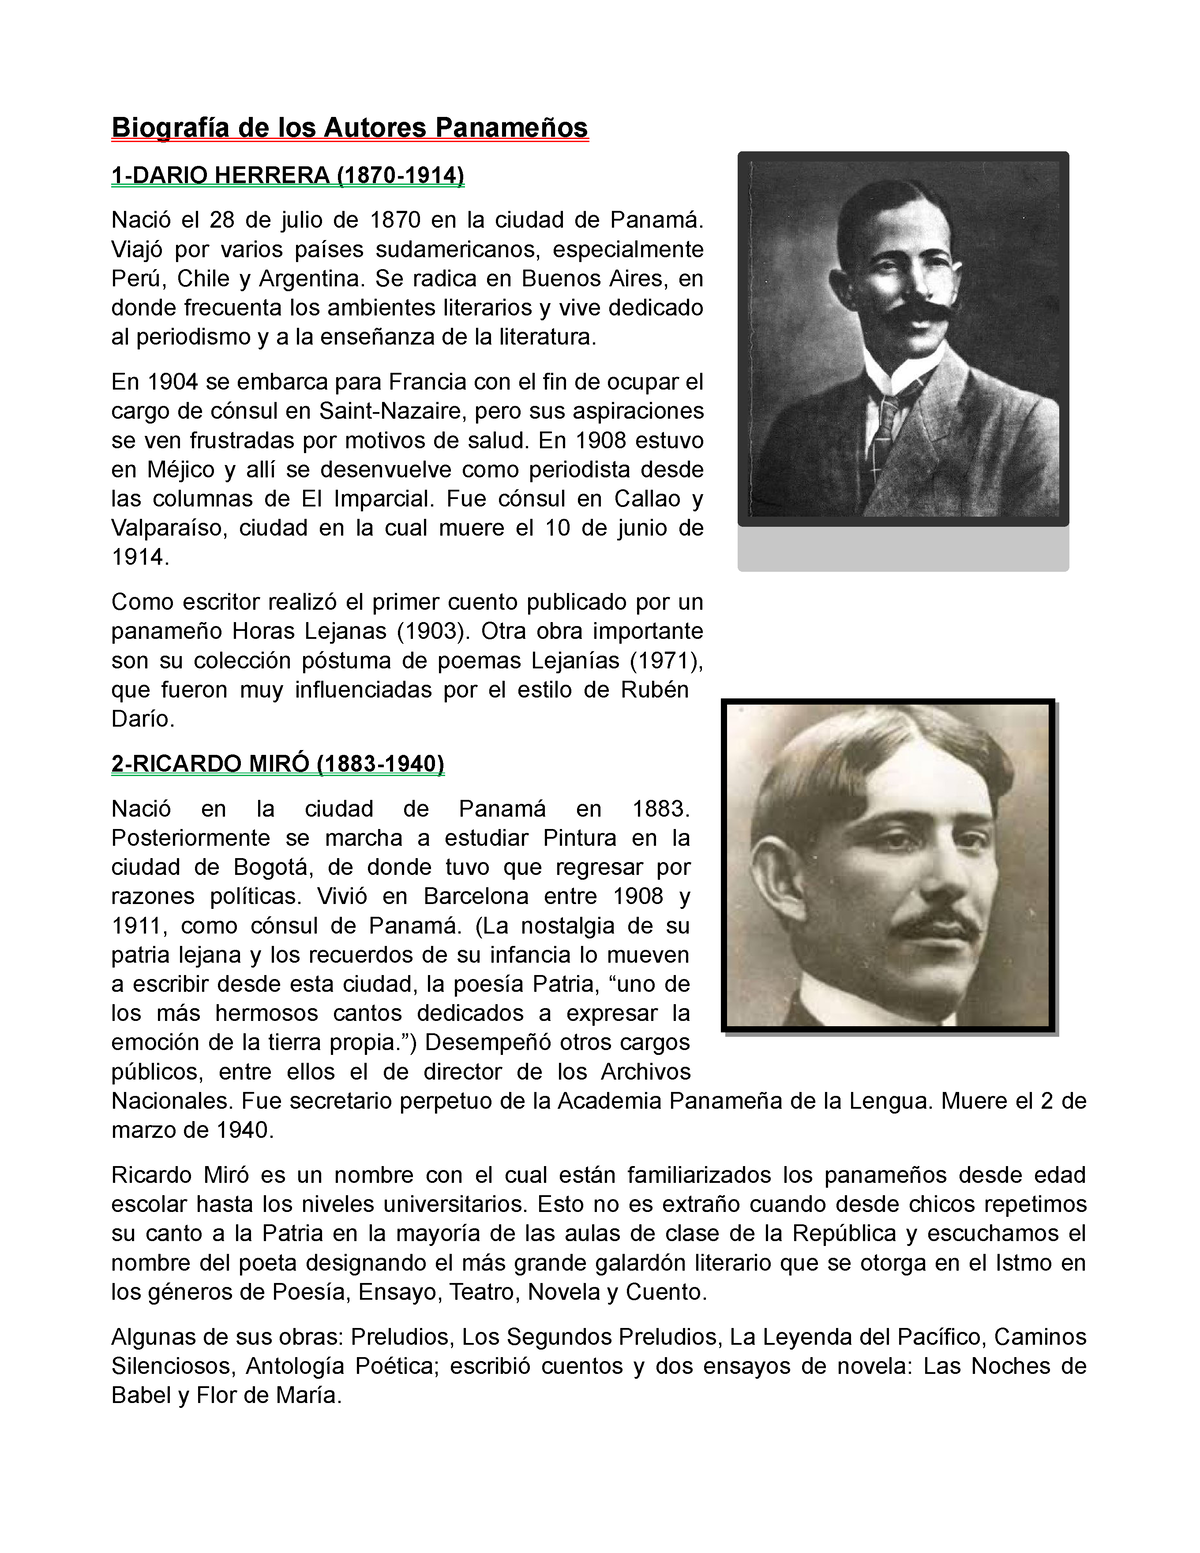 Biografía de los Autores Panameños - Biografía de los Autores Panameños  1-DARIO HERRERA (1870-1914) - Studocu